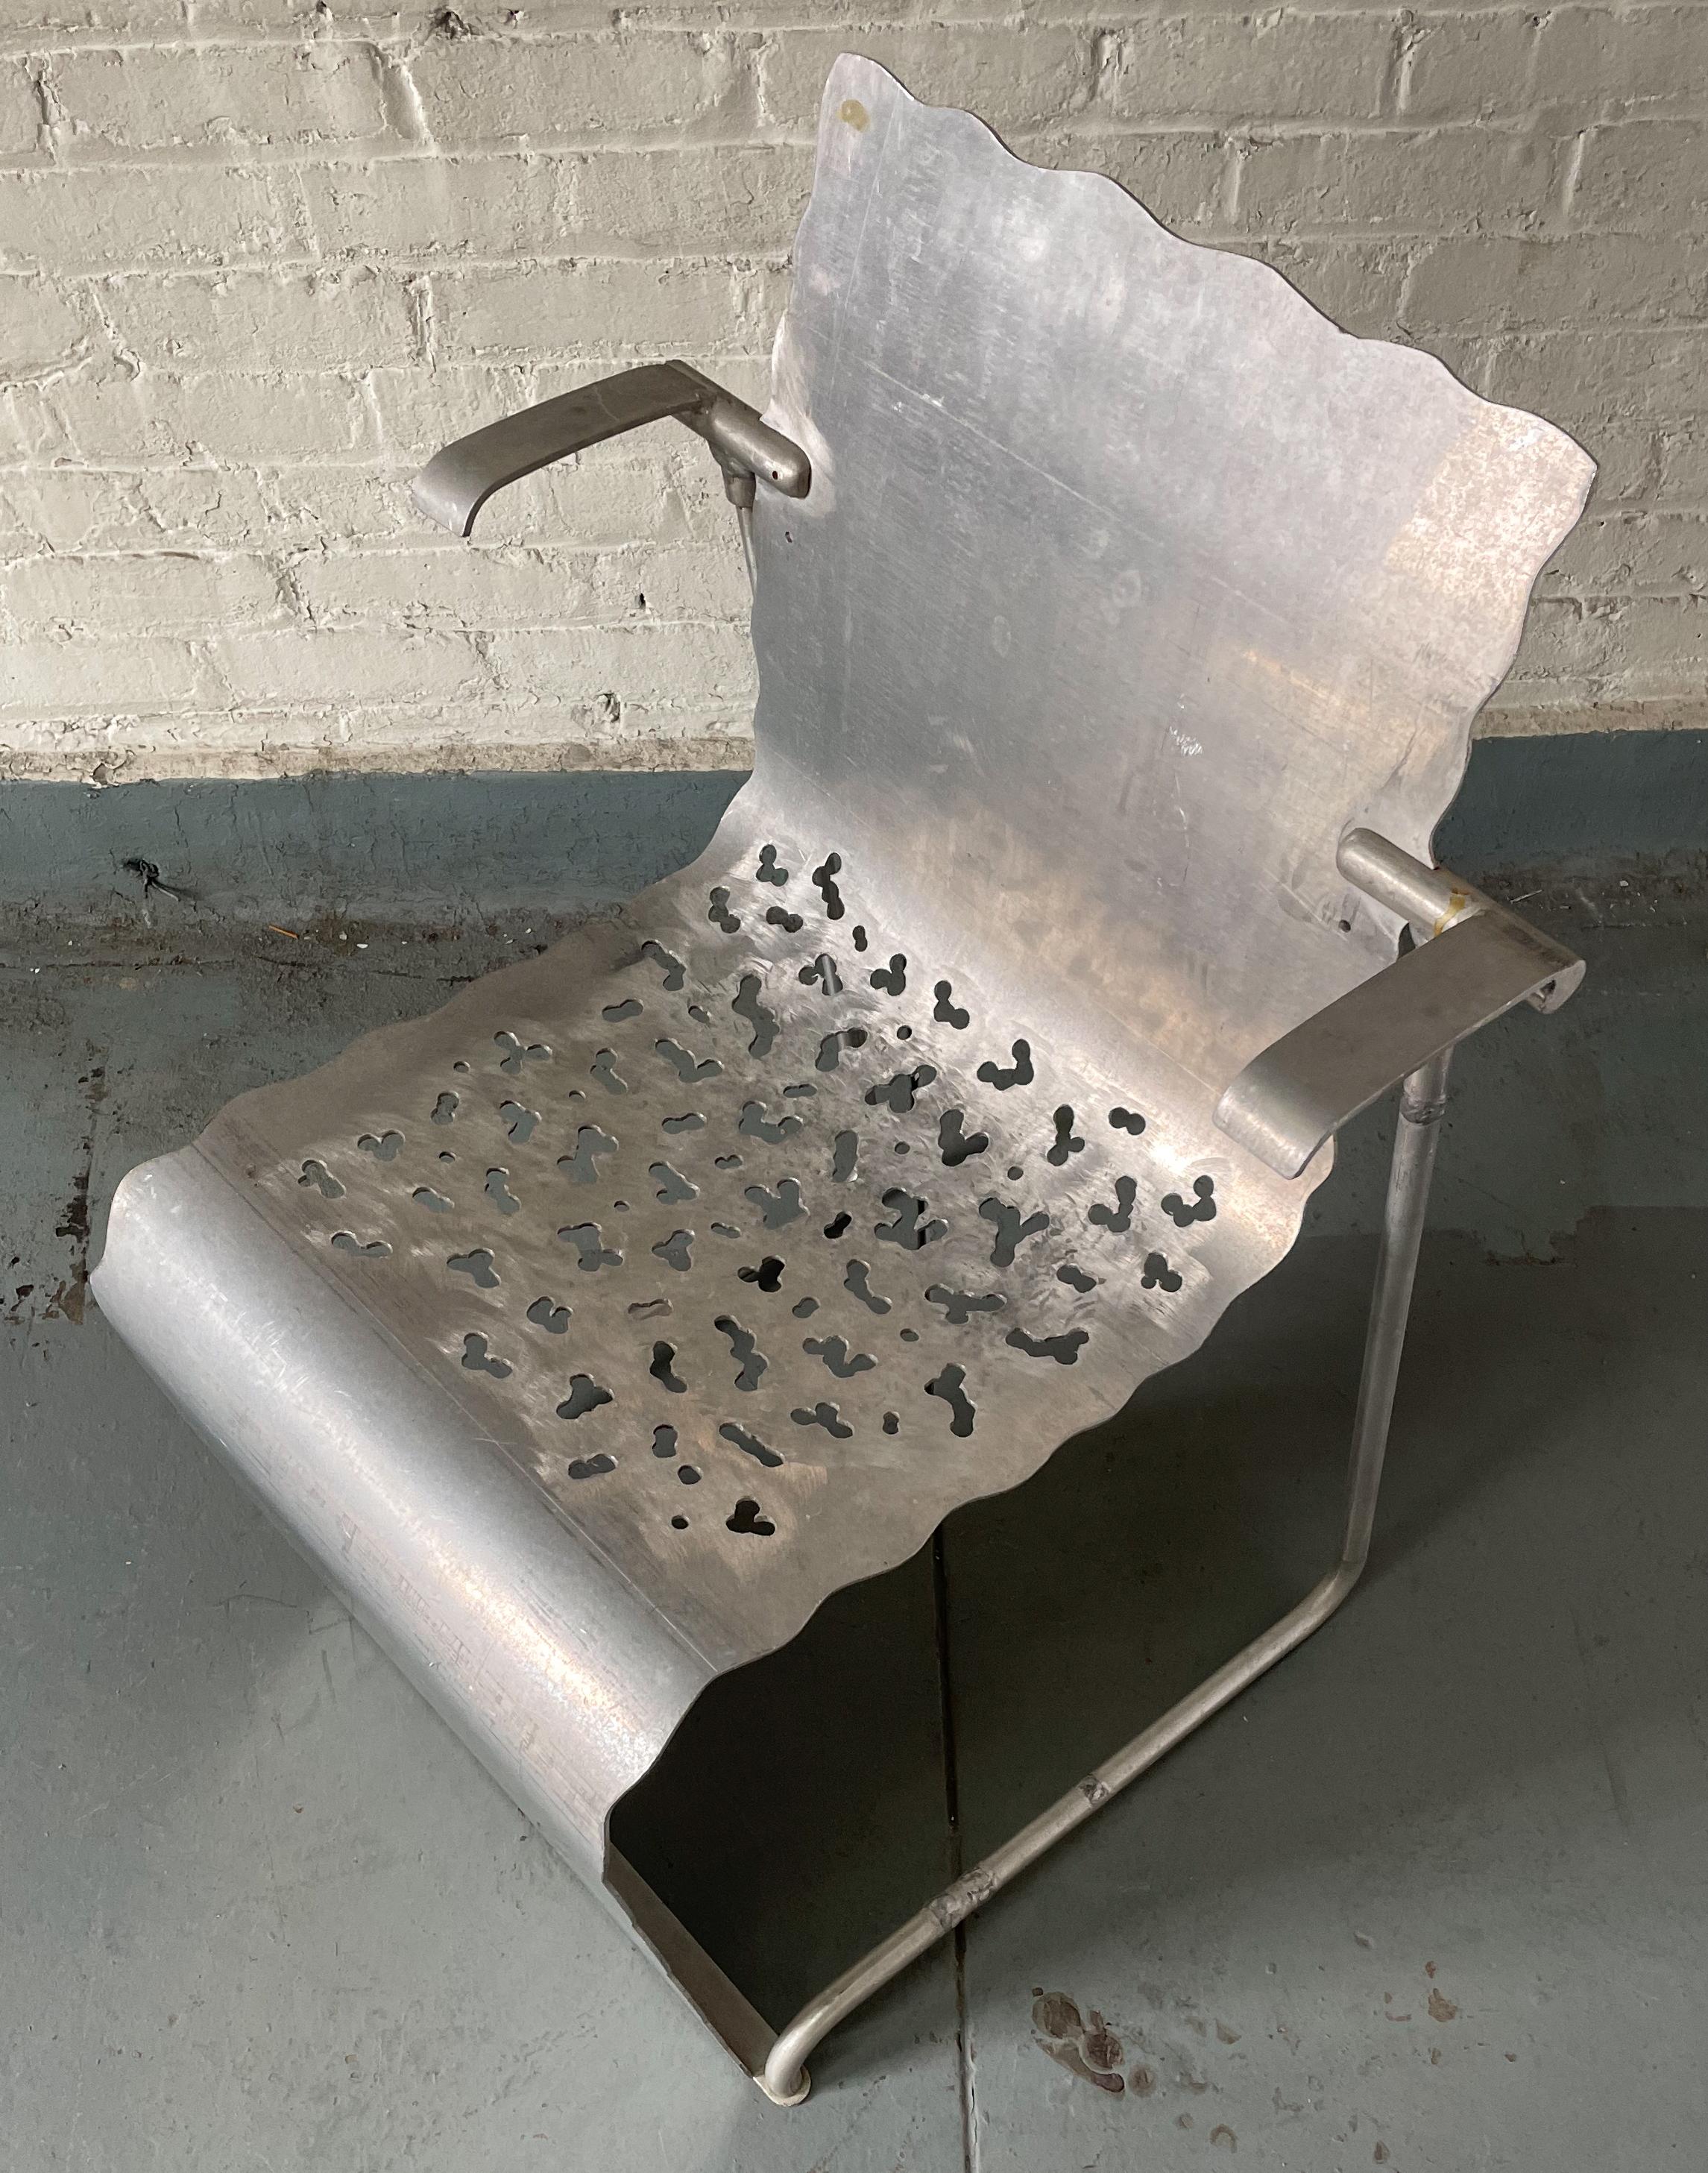 Prototype de chaise empilable fabriqué à la main à partir d'une feuille d'aluminium et de tubes d'aluminium par le designer de meubles et artiste Richard Schultz. Il s'agit d'un modèle 3D grandeur nature qui explore les qualités ergonomiques et